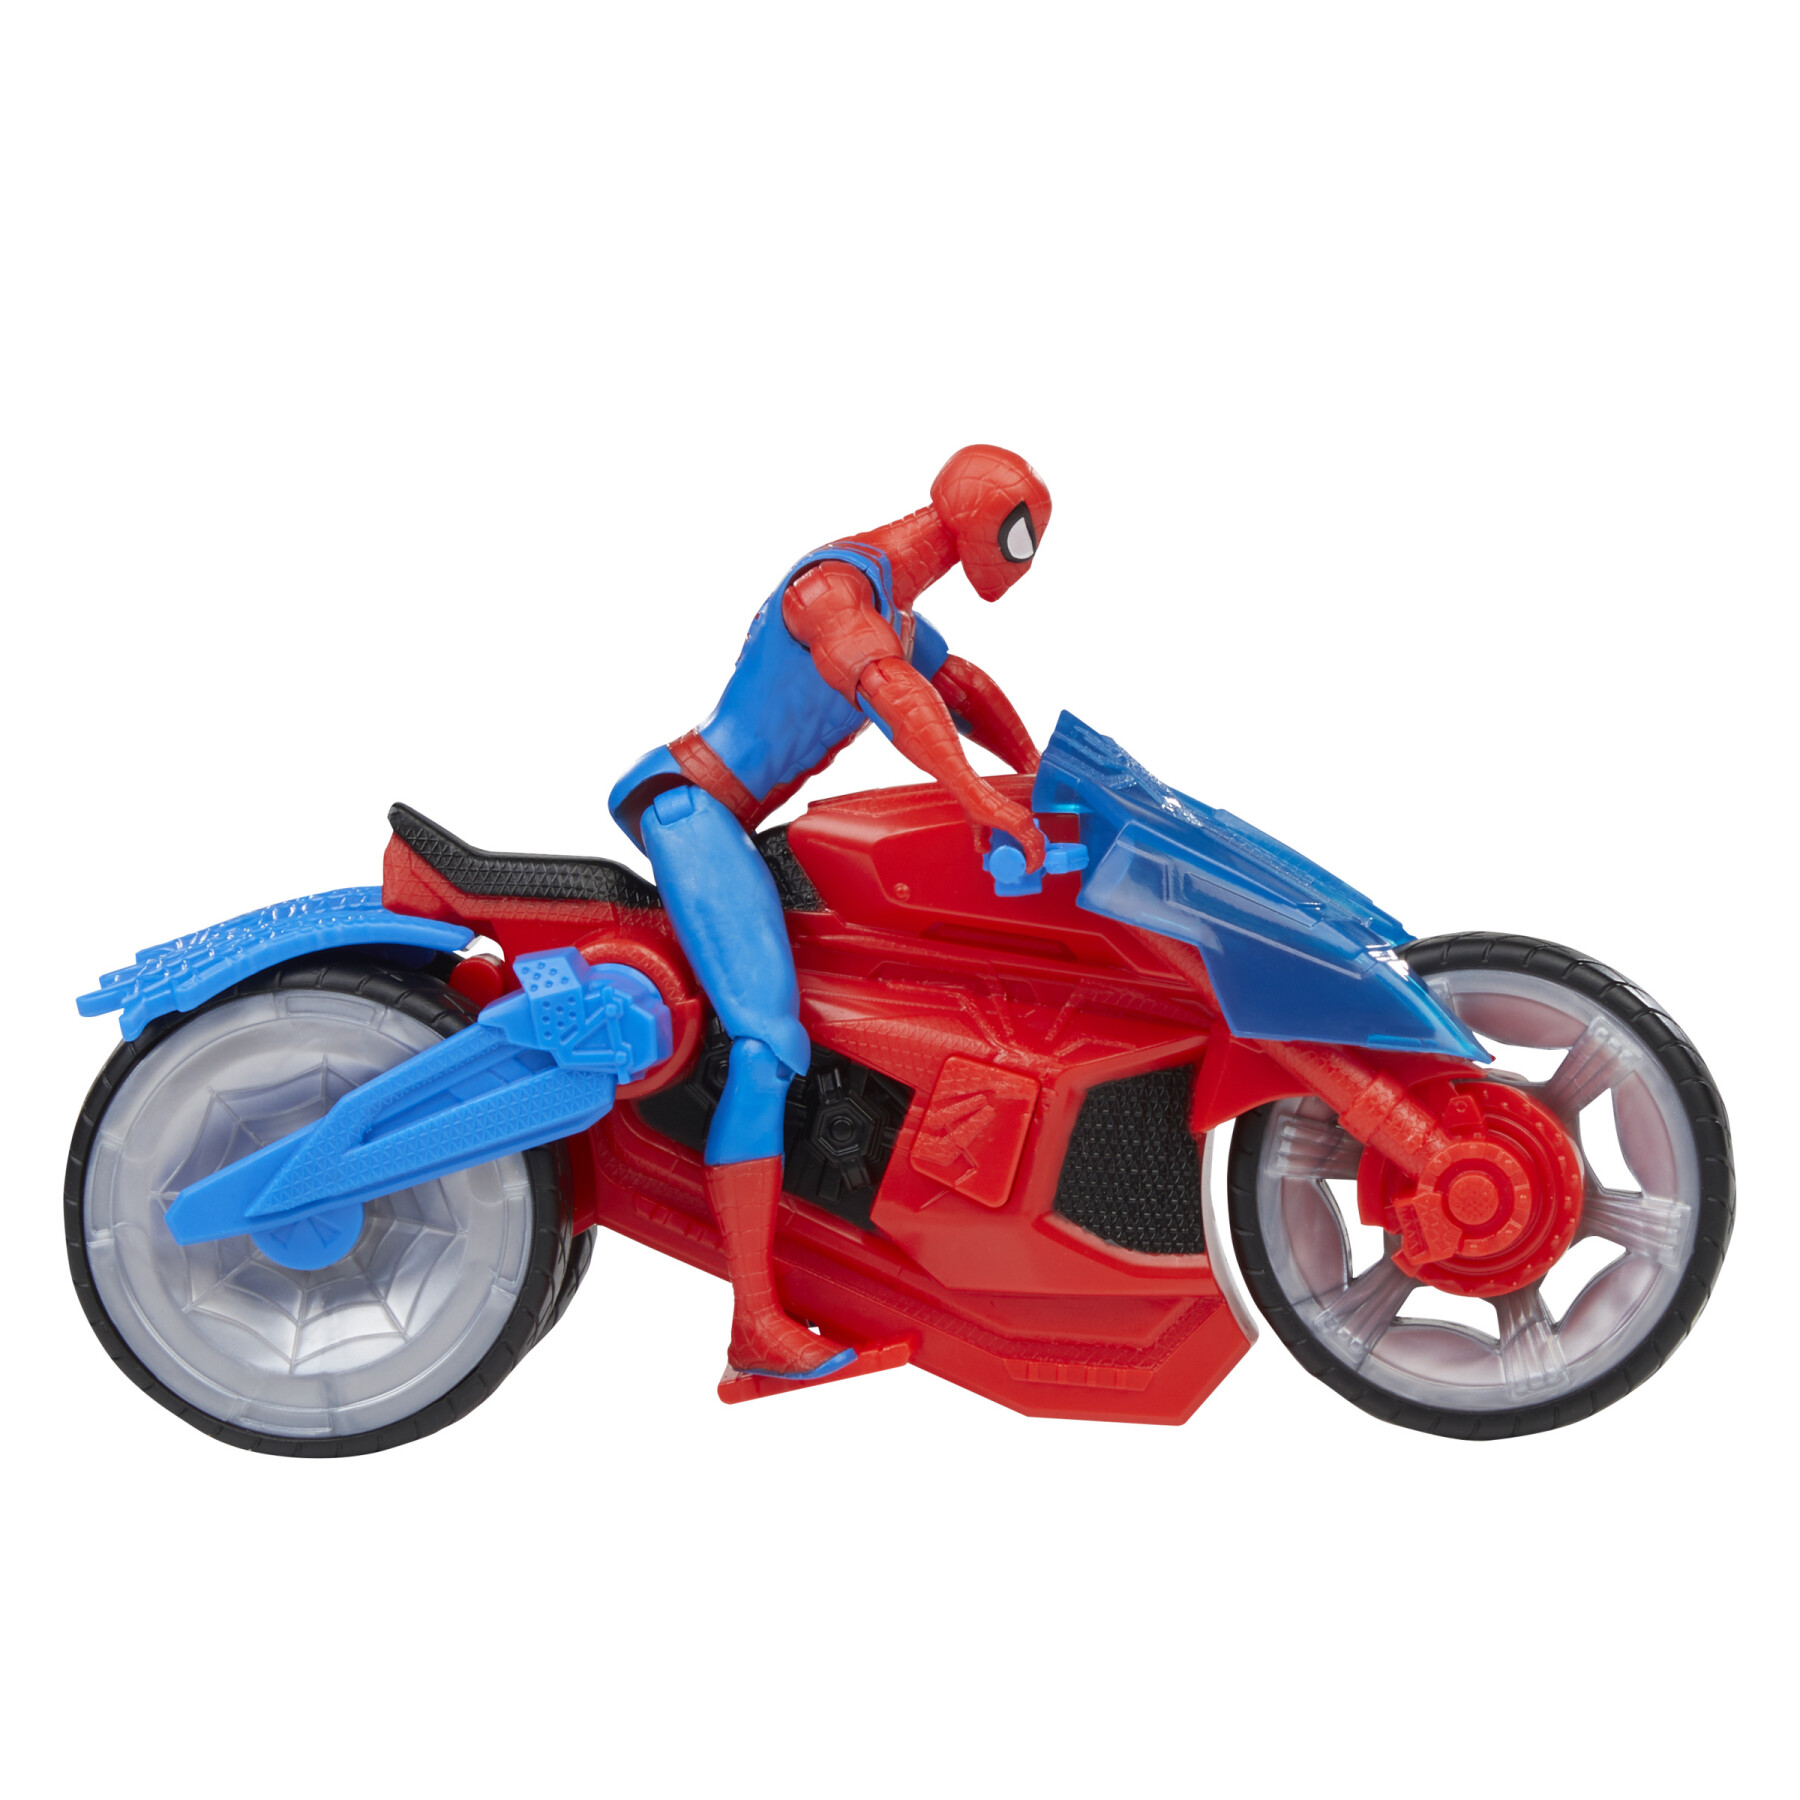 Hasbro marvel, motocicletta spara-ragnatele di spider-man - Spiderman